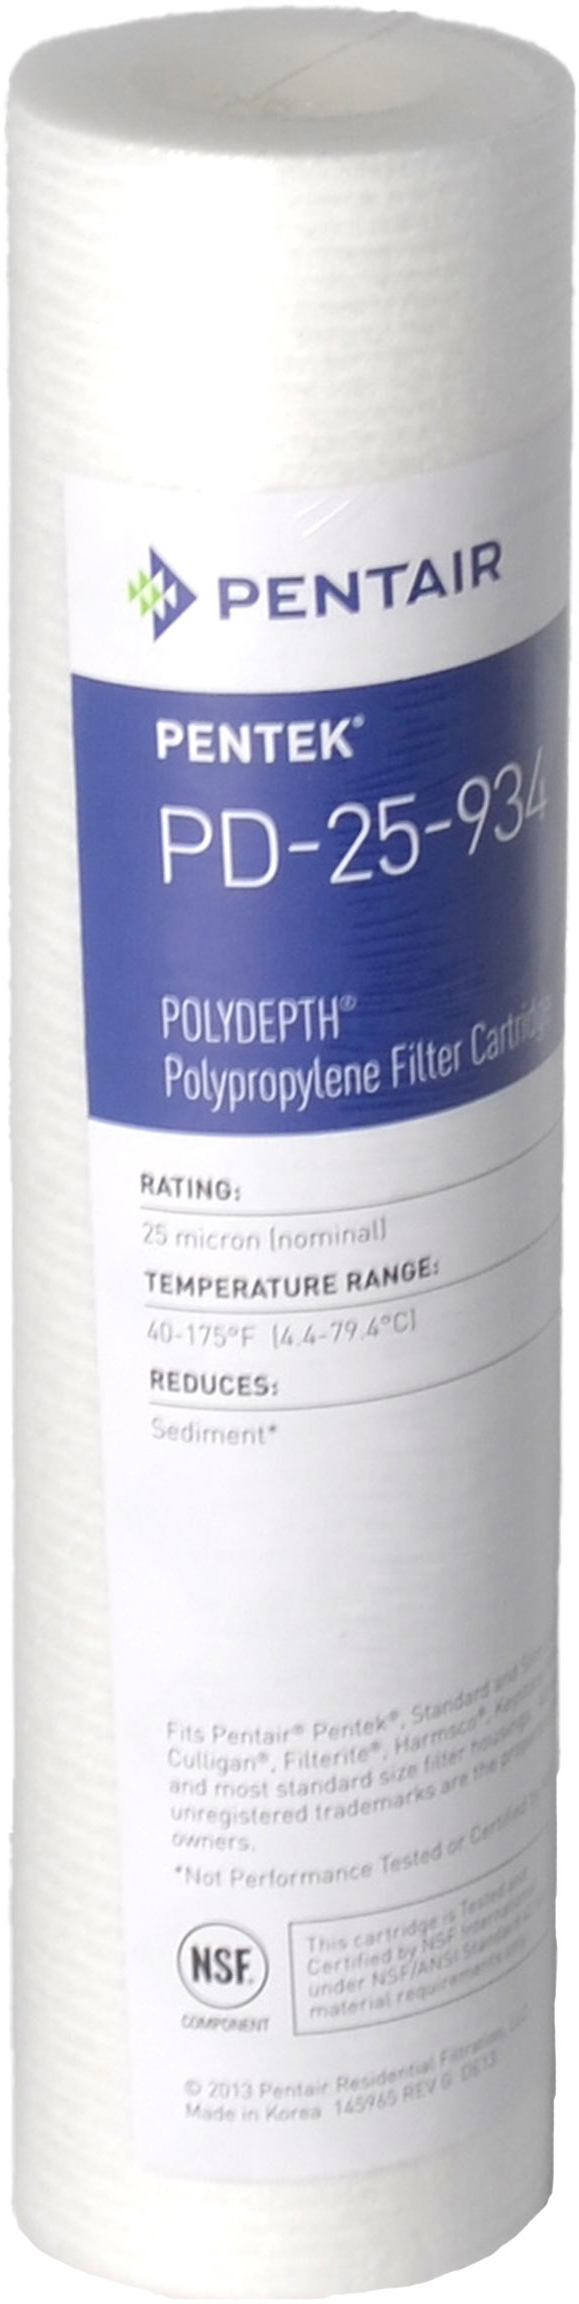 Картридж для проточного фильтра Pentek PD-25-934 Polydepth (155751-43)